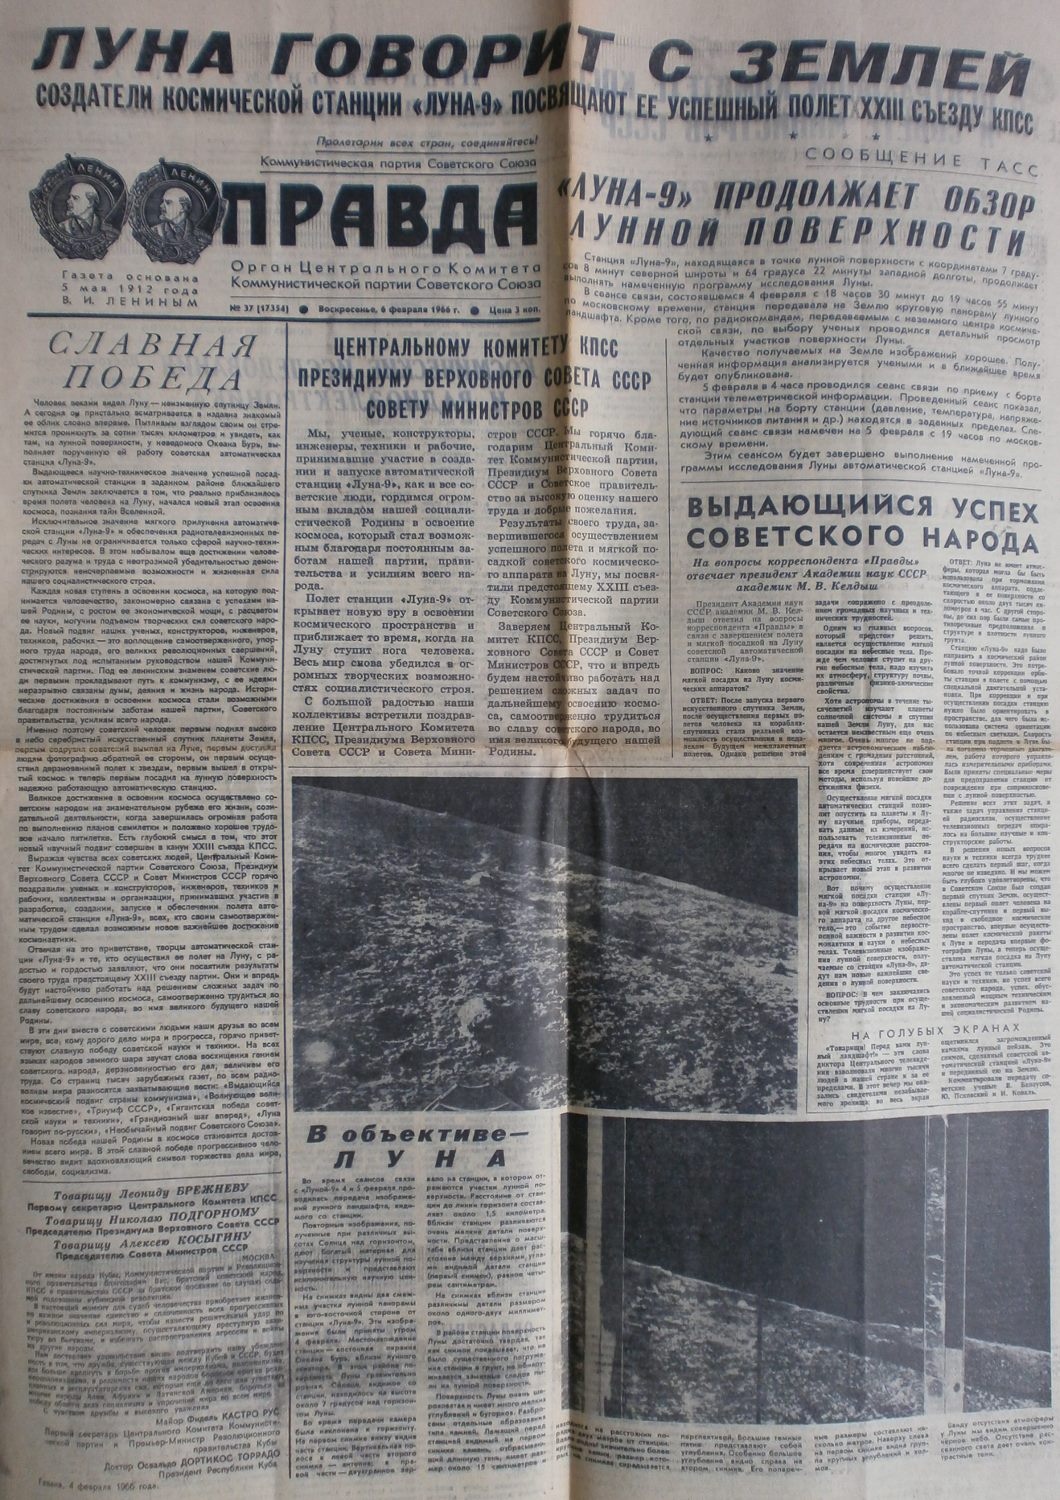  "Prawda", 6. Februar 1966